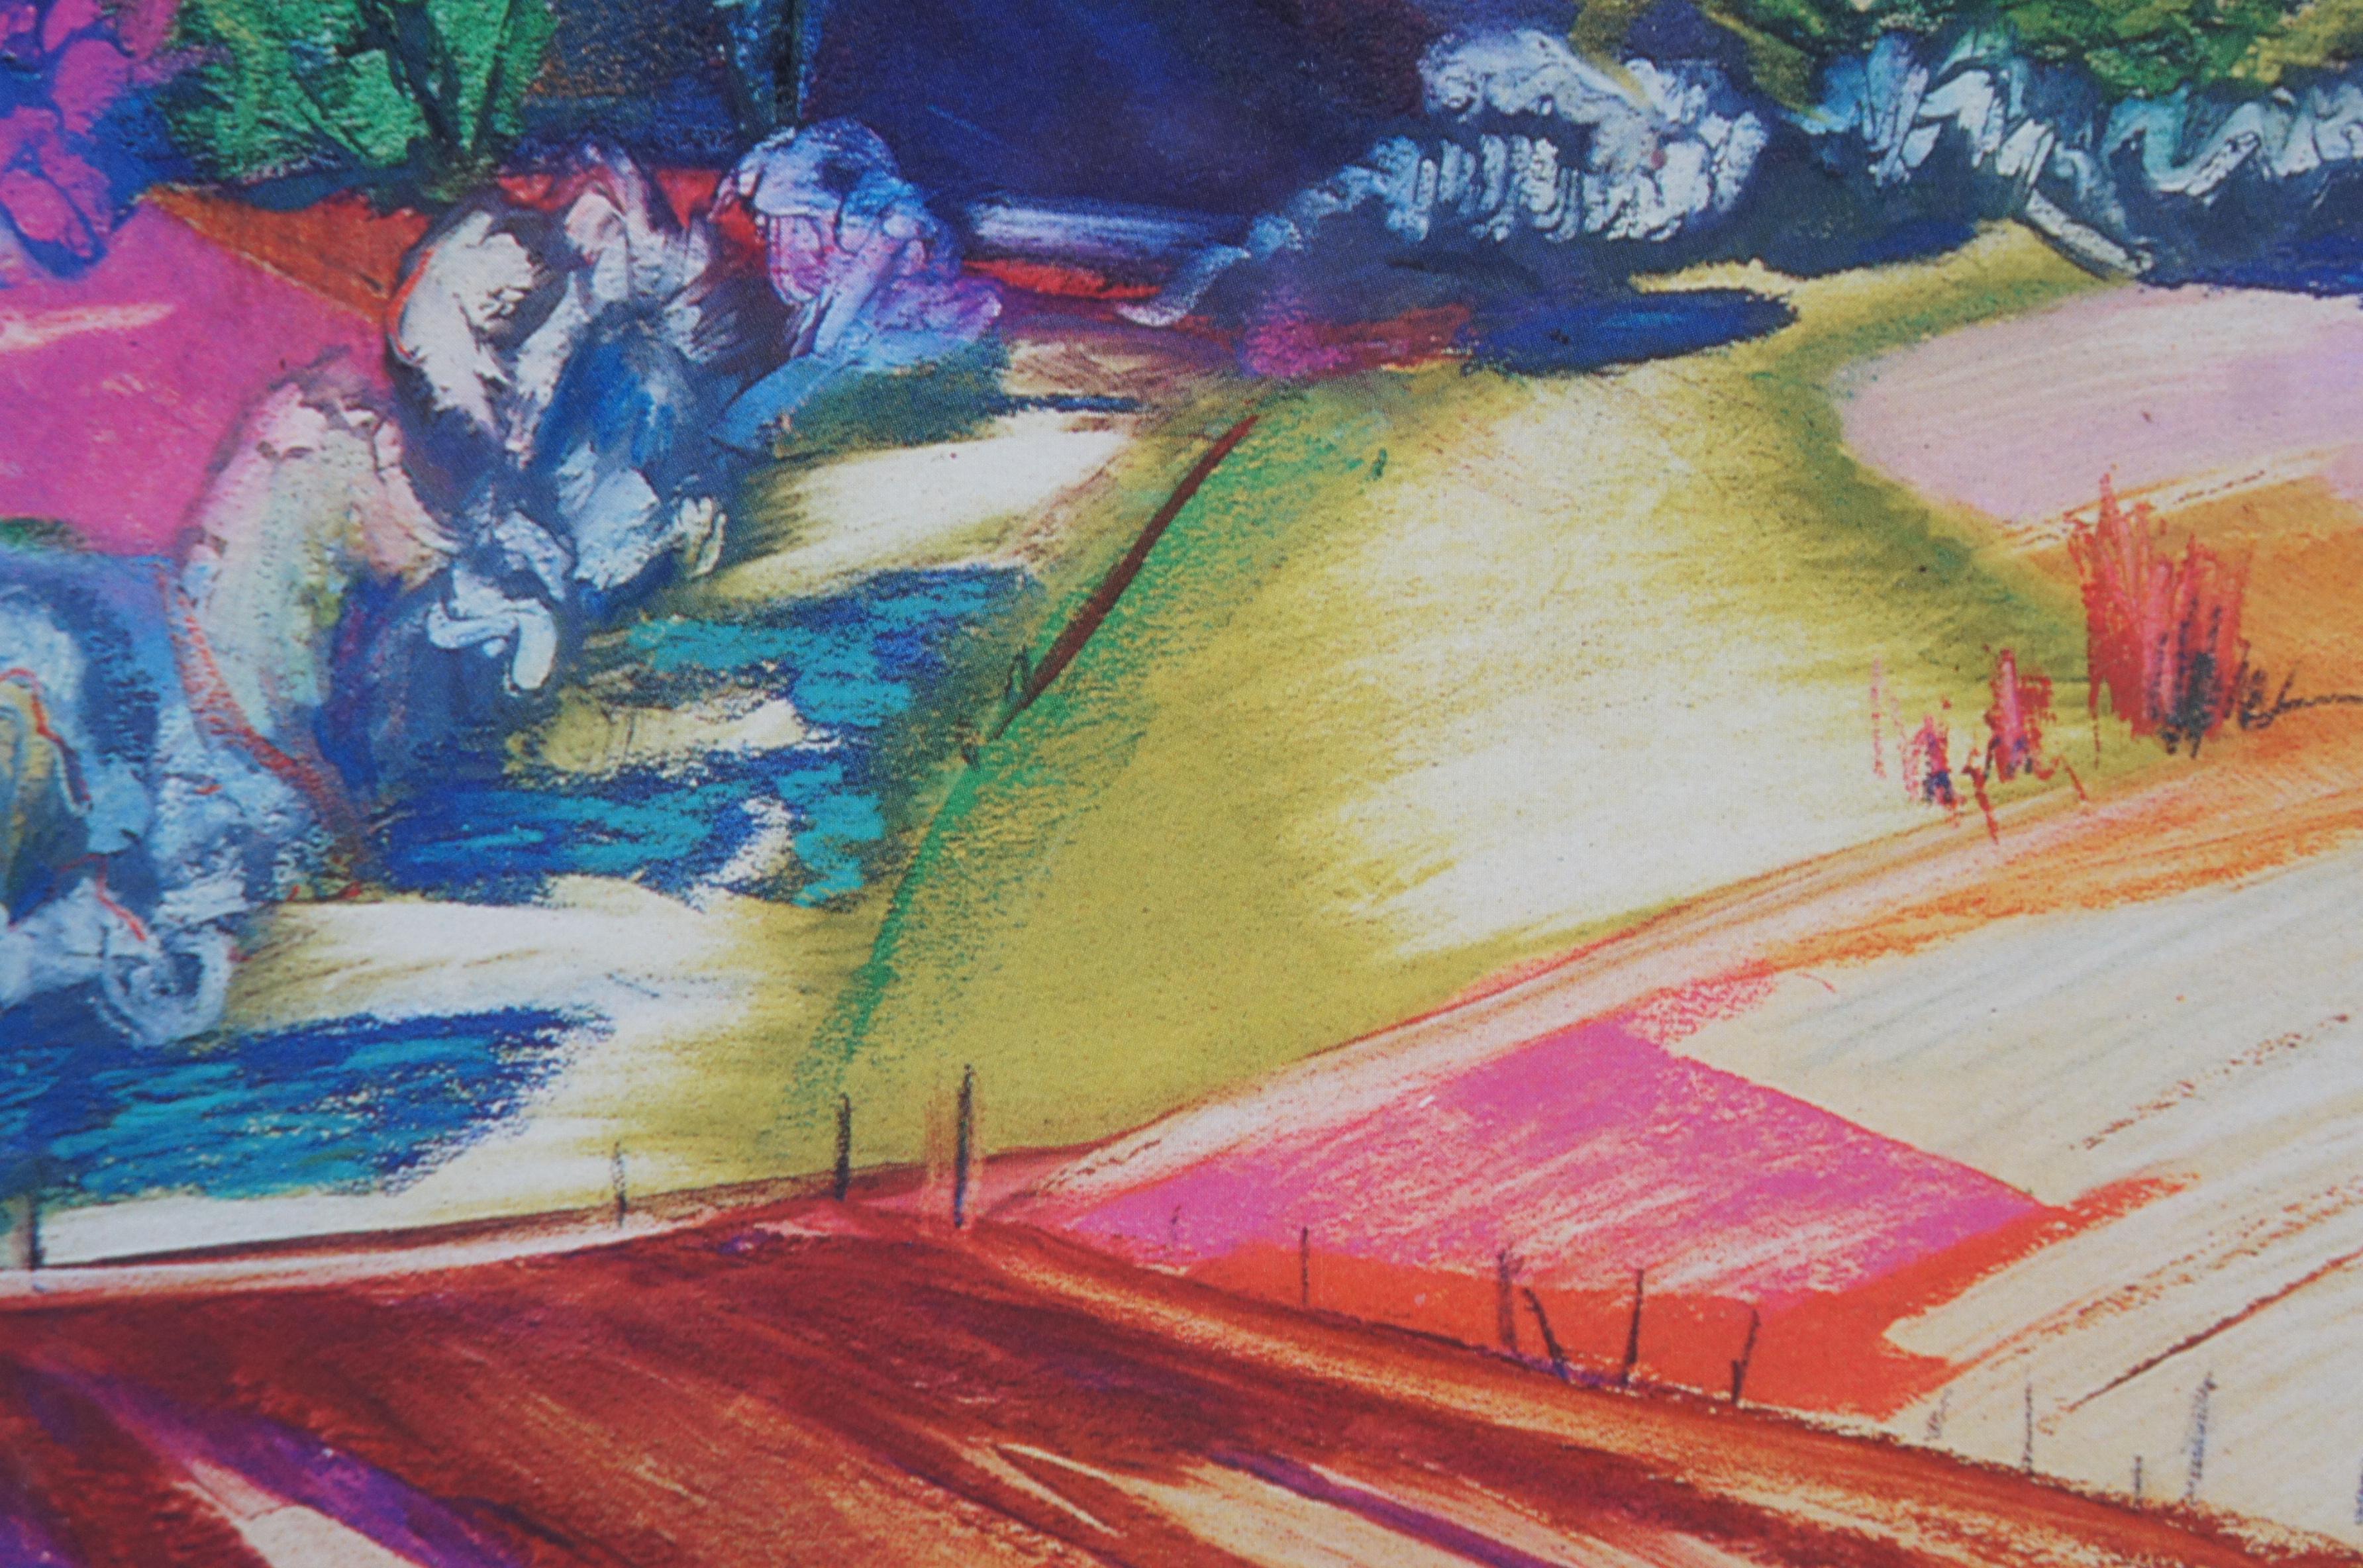 Paper 1987 Miguel Martinez Lithograph Portrait Print Landscape Expressionism 32